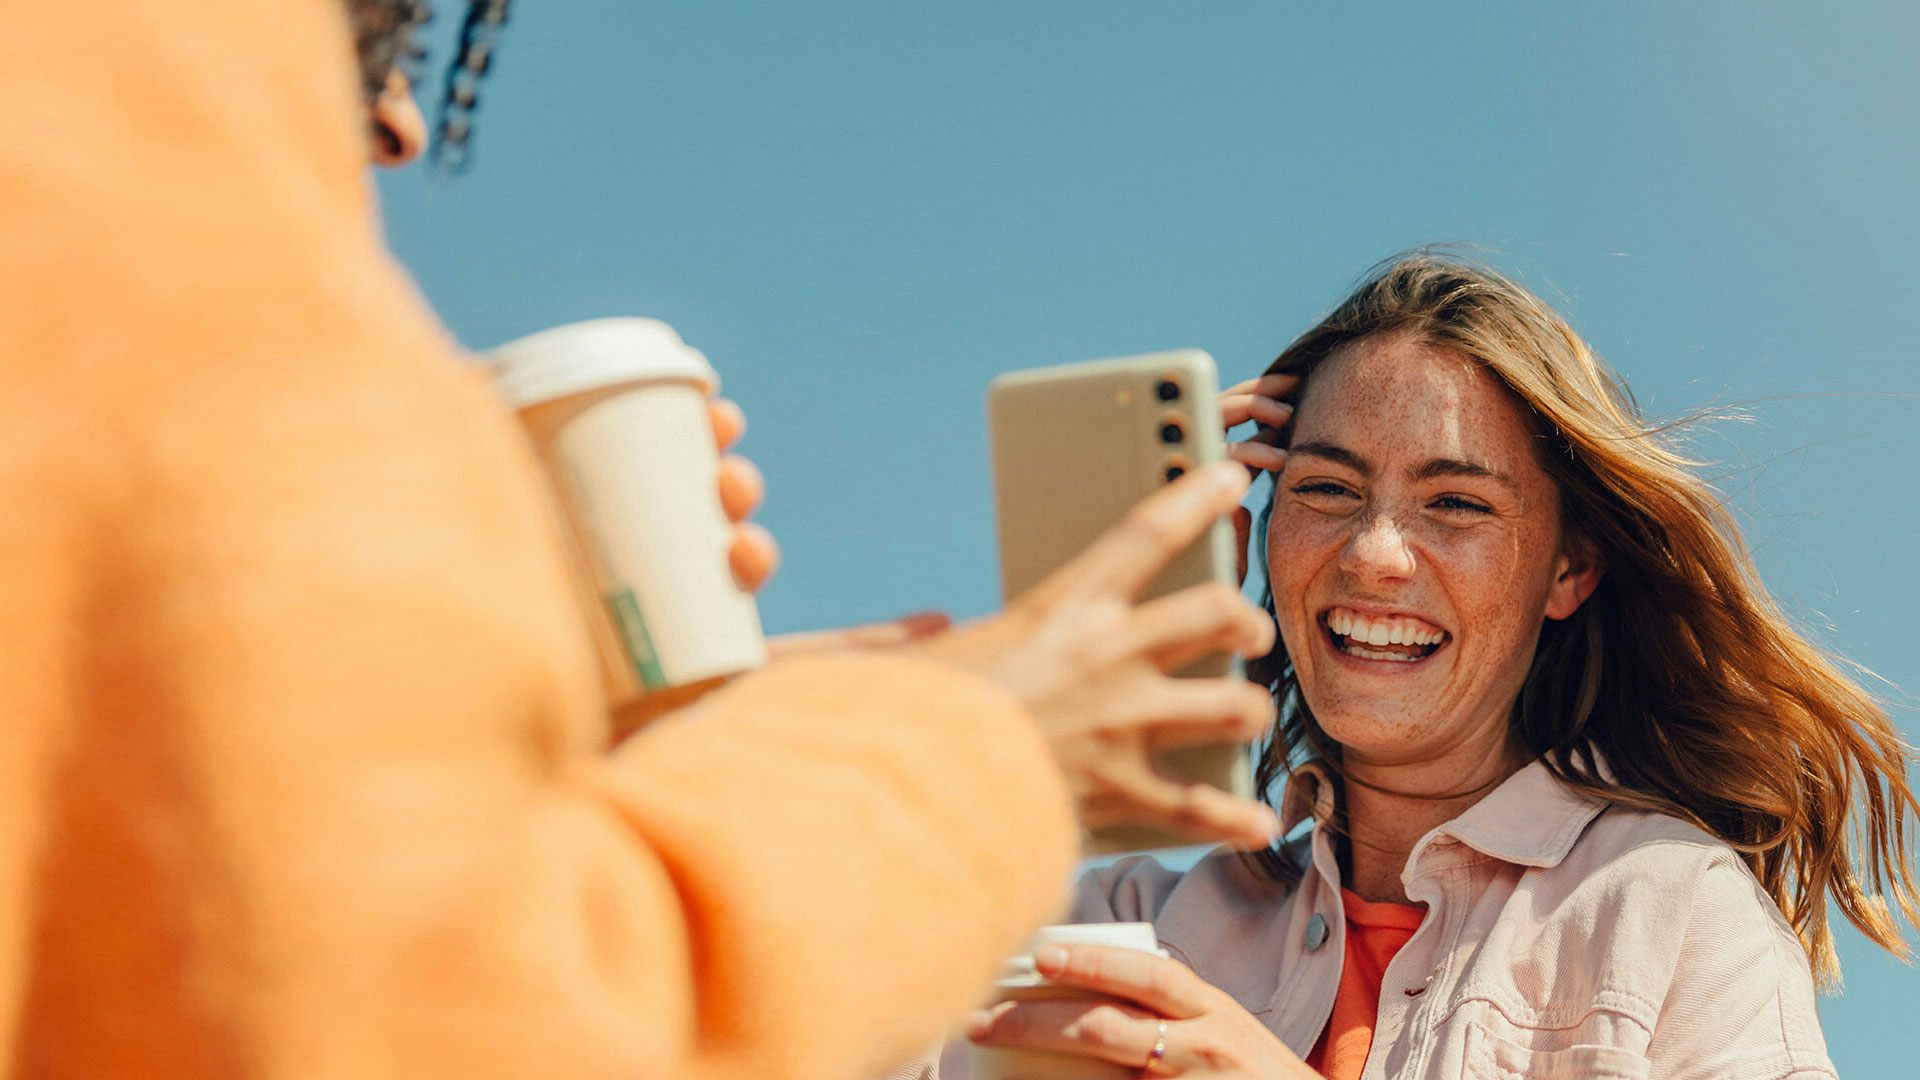 Kompis visar upp sin mobilskärm till kvinna som skrattar